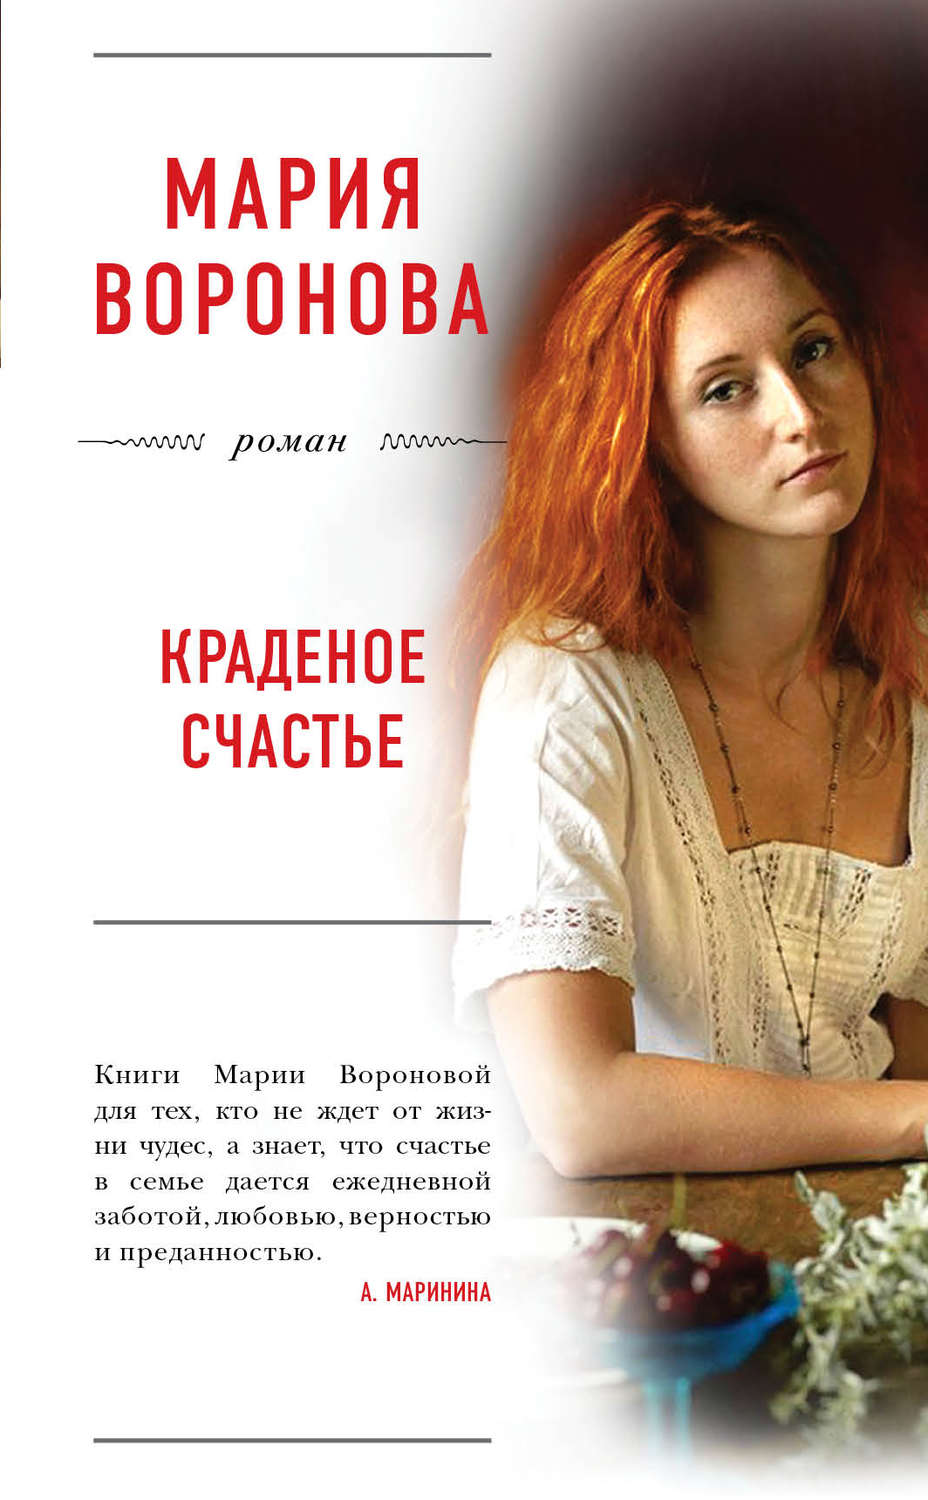 Читать книгу счастье в подарок. Книги Марии Вороновой.